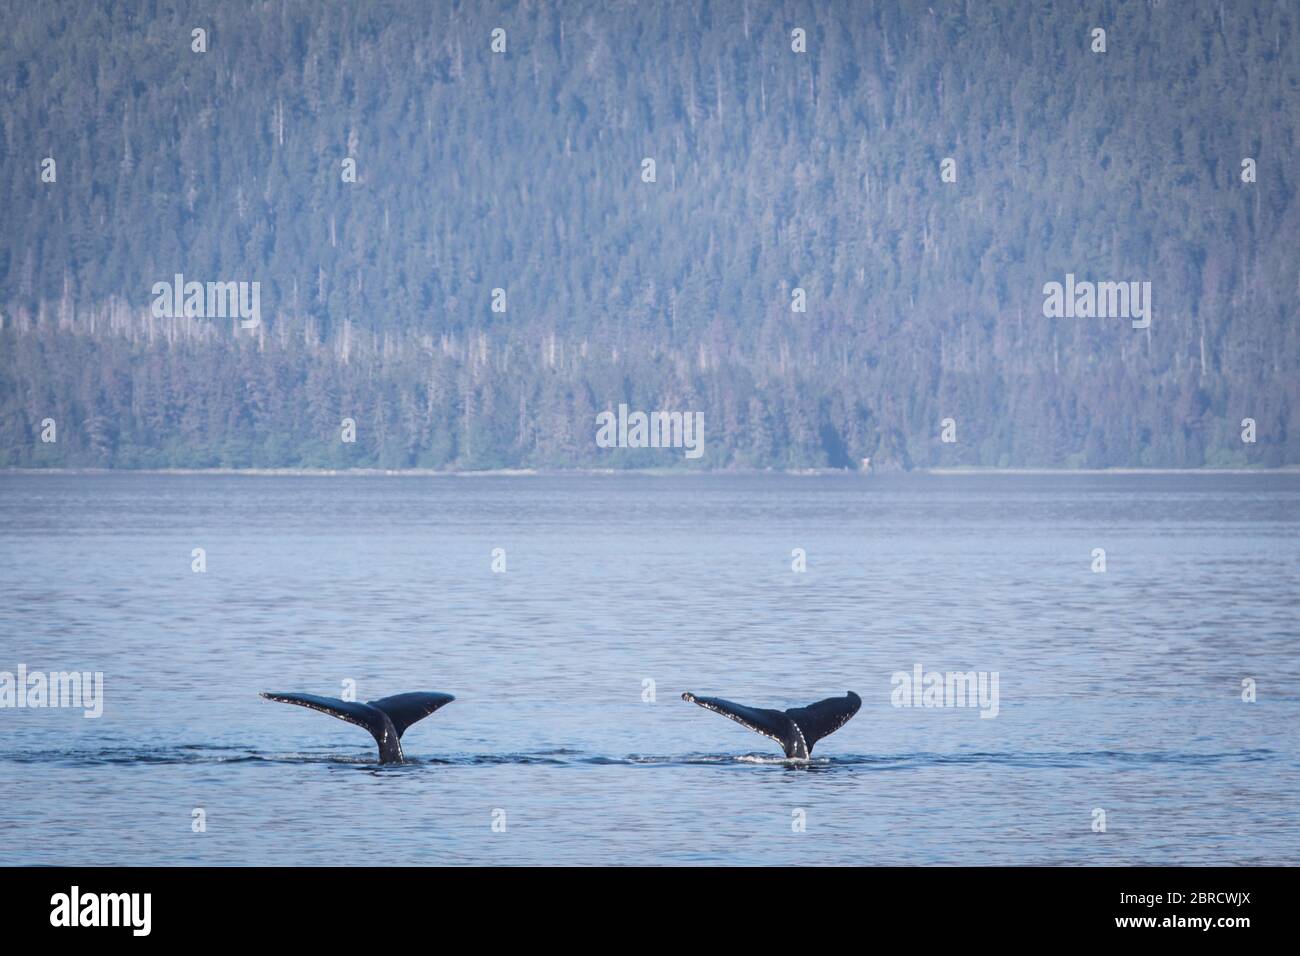 Frederick Sound nel passaggio interno è un luogo popolare per guardare la balena Humpback, Megaptera novaeangliae, Frederick Sound, Alaska, Stati Uniti. Foto Stock